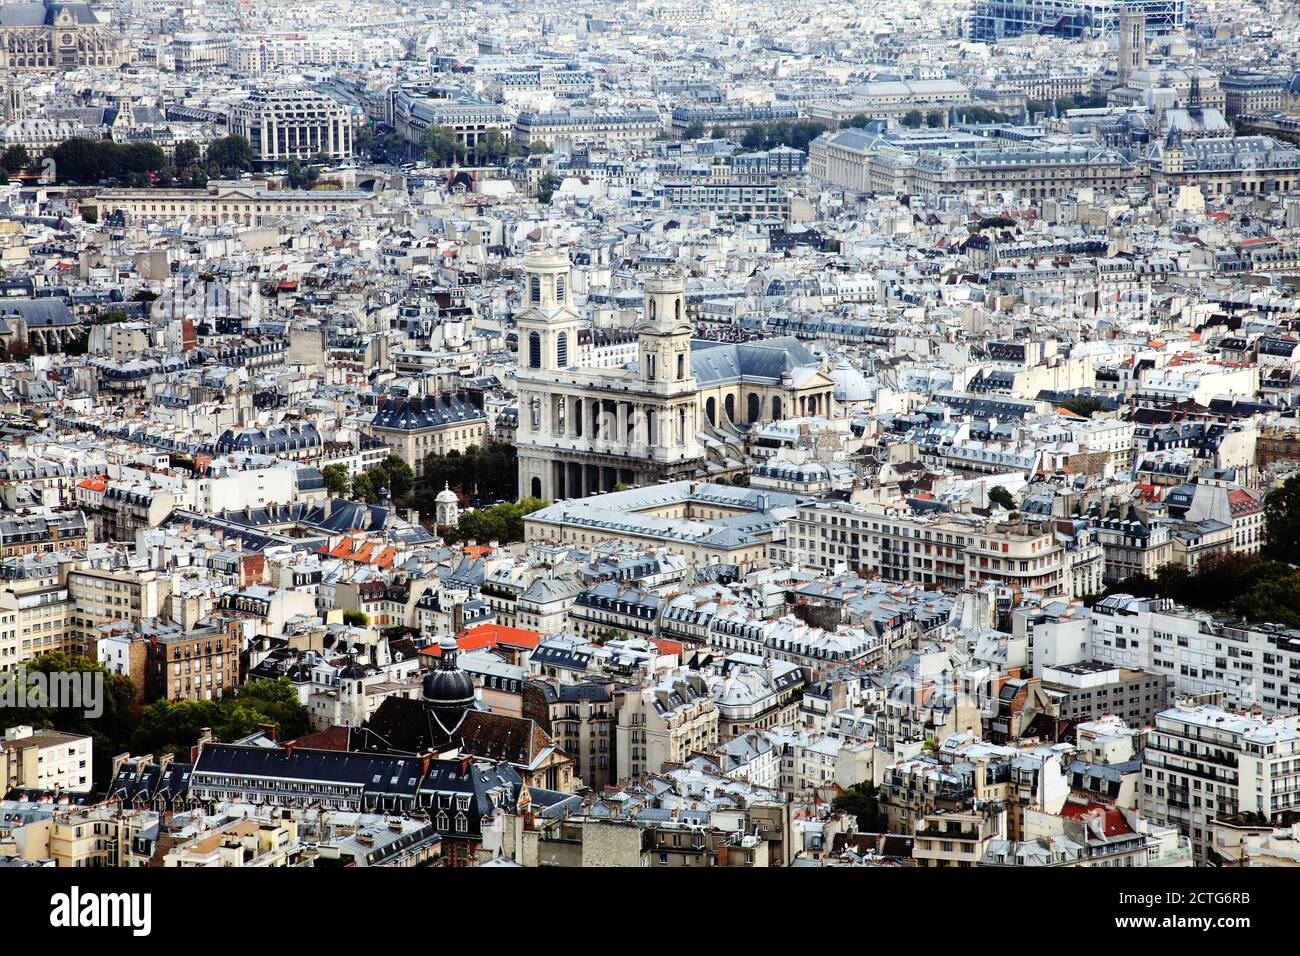 Vista aerea della città di Londra Skyline che mostra la Cattedrale di San Paolo, un viaggio popolare destinazione attrazione turistica landma Foto Stock